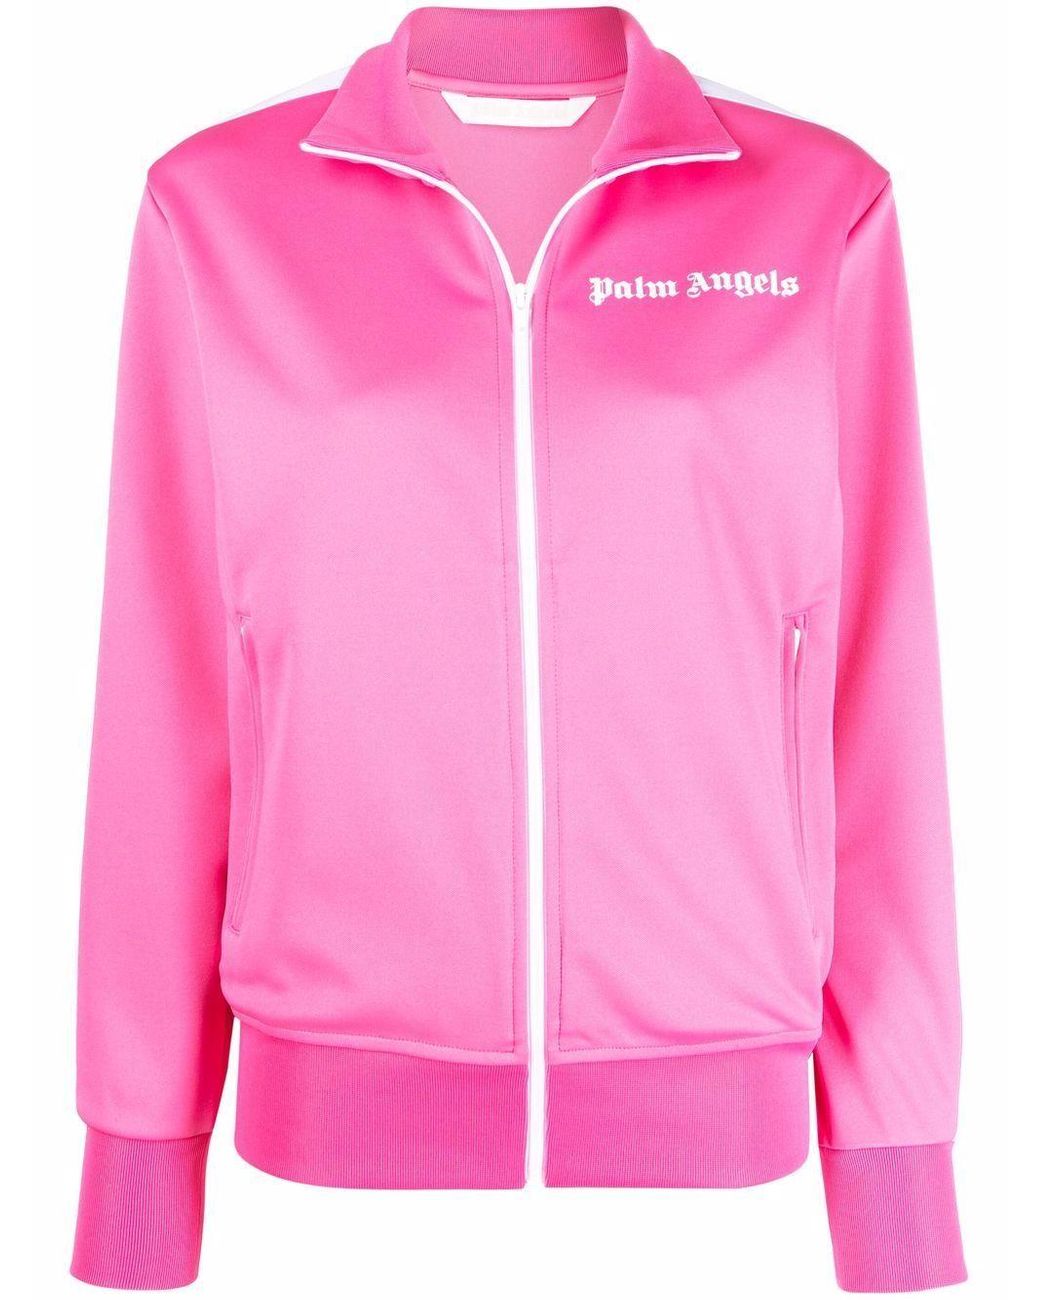 Palm Angels Synthetik Polyester sweatshirt in Pink Training und Fitnesskleidung Sweatshirts Damen Bekleidung Sport- 